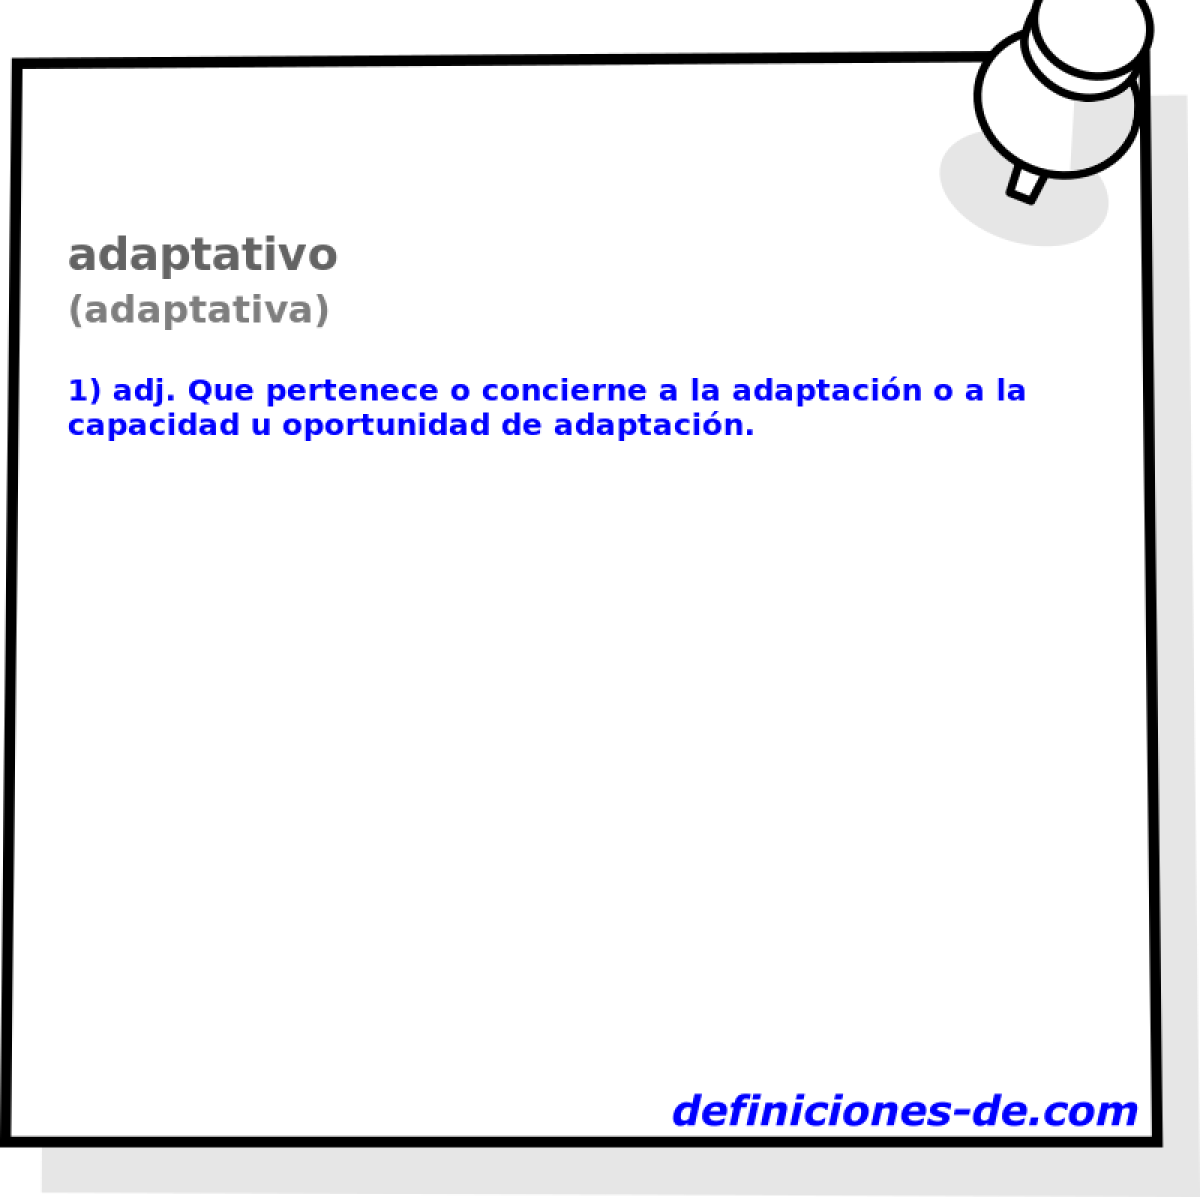 adaptativo (adaptativa)